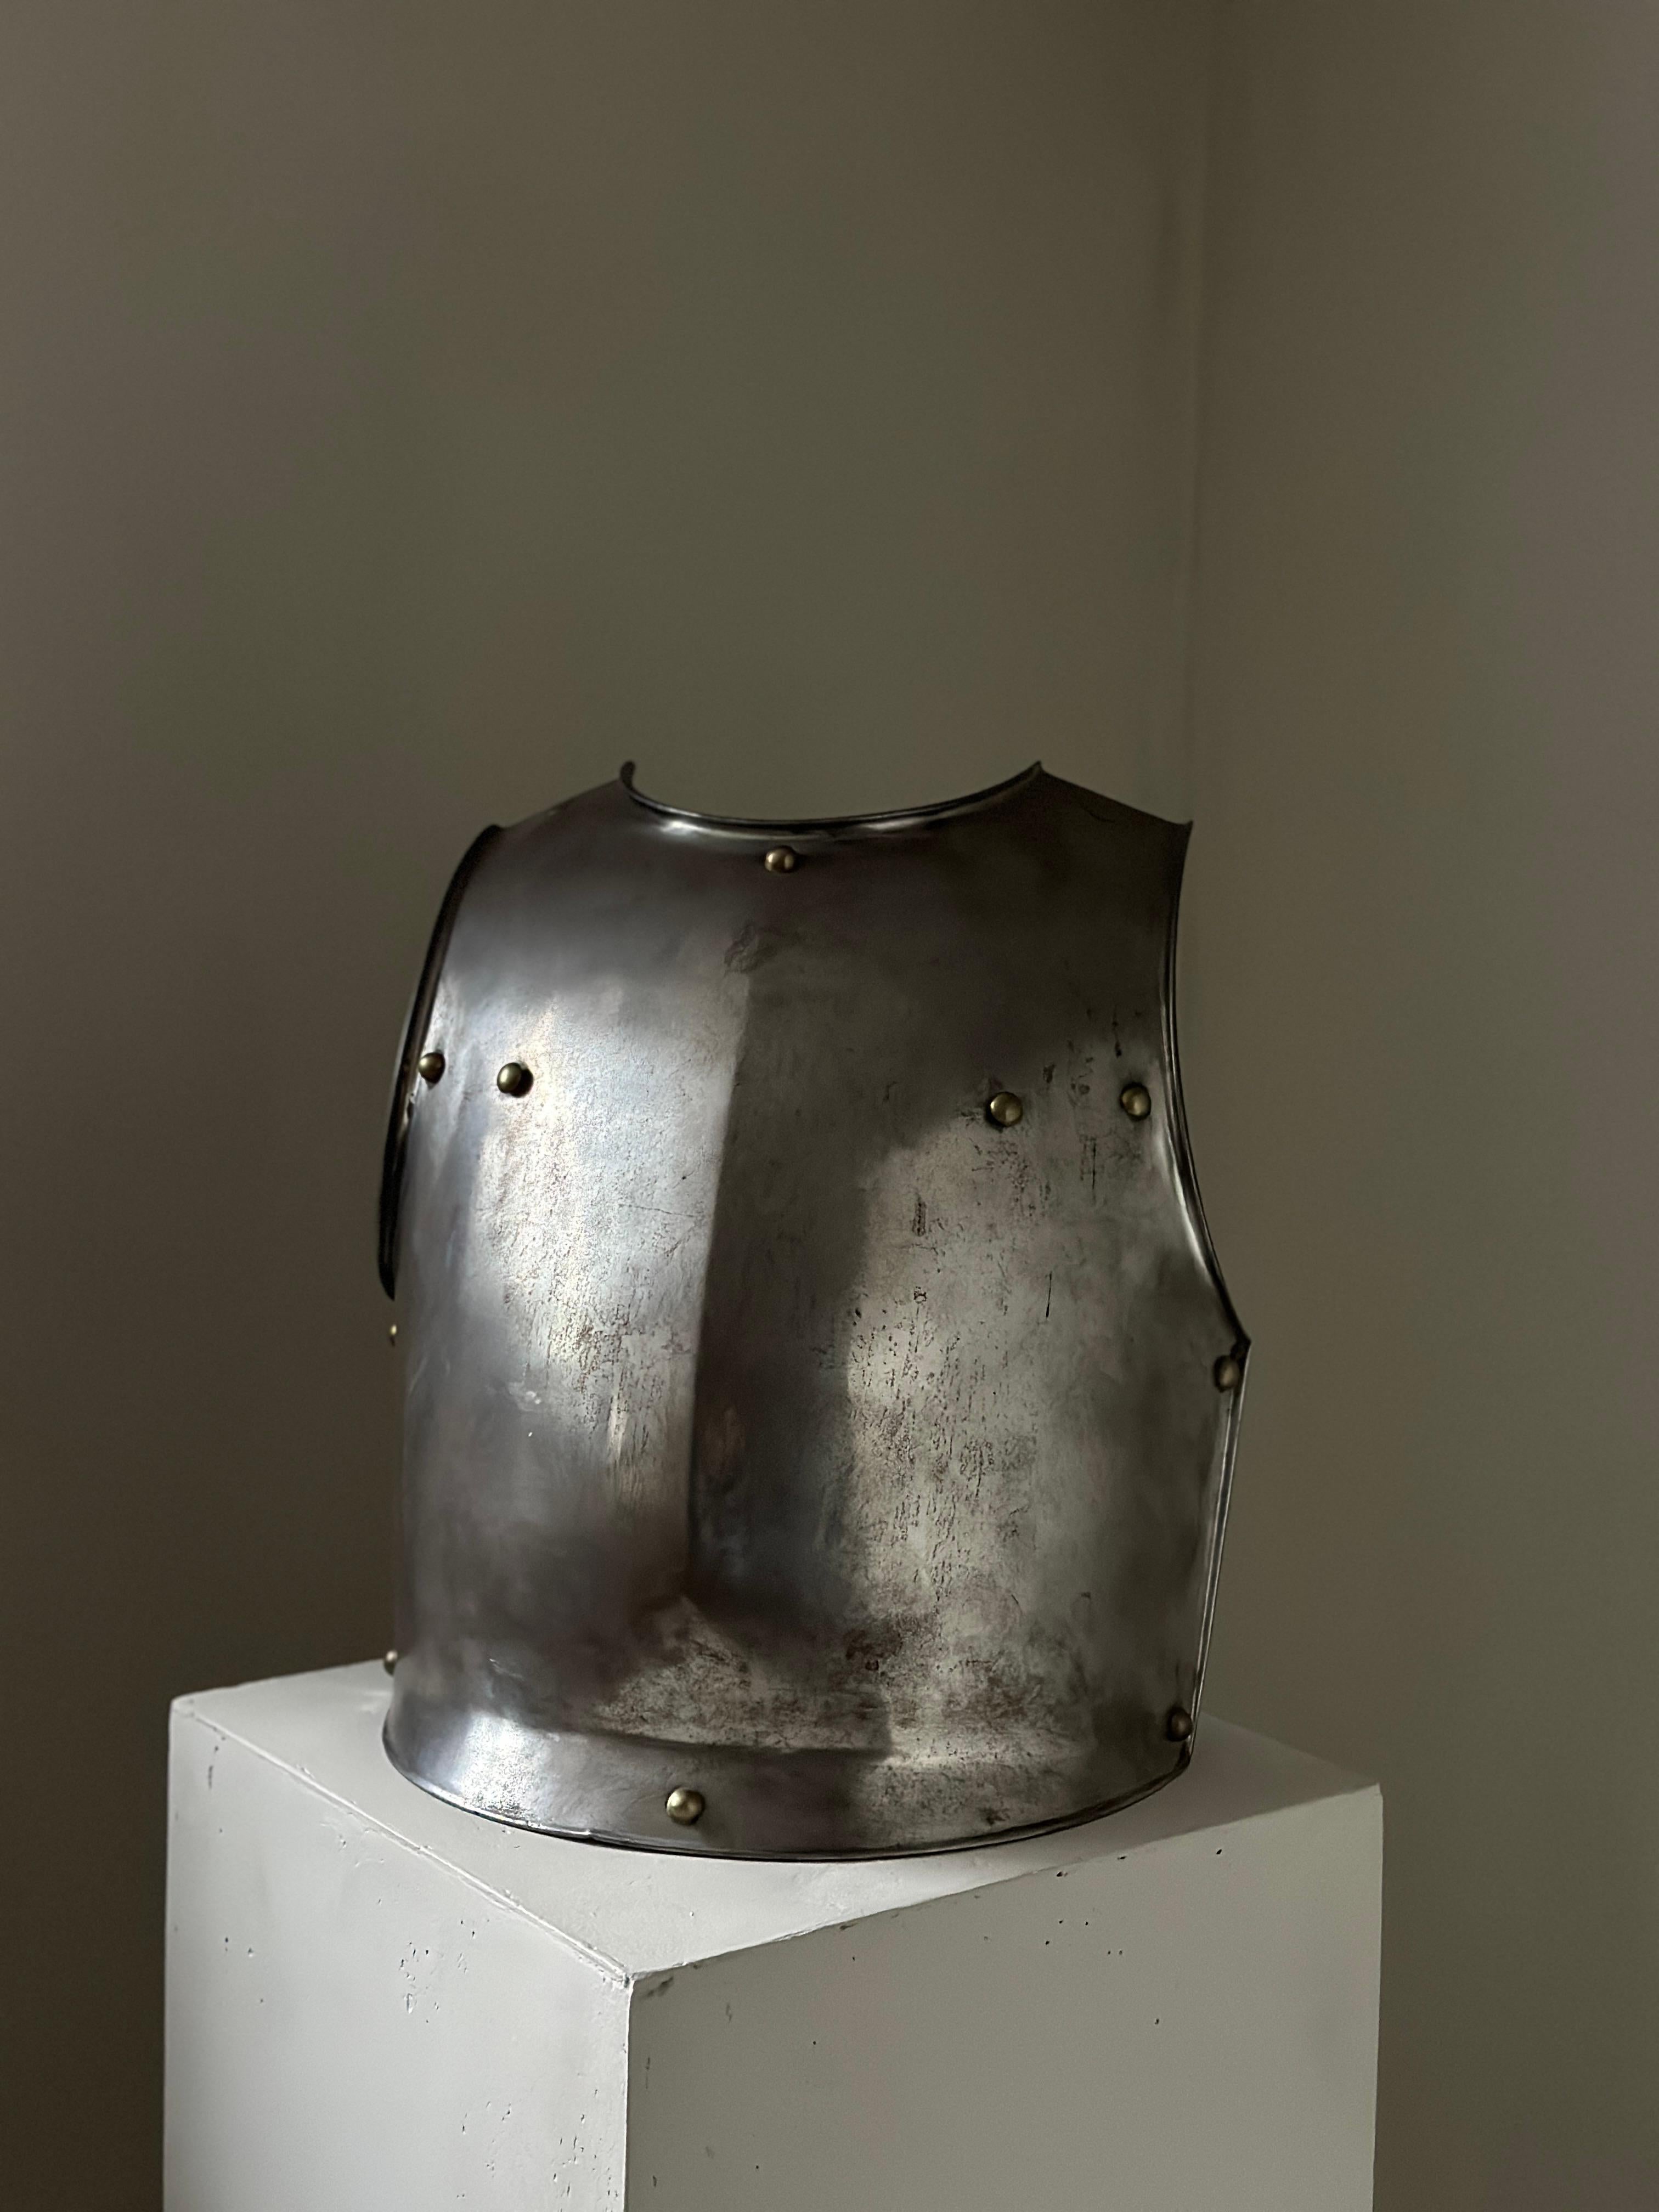 Une belle pièce décorative unique. Un ancien Armor scandinave en métal, qui peut être accroché au mur ou placé sur un pidestall pour la décoration. 

Usure conforme à l'âge et à l'utilisation.
